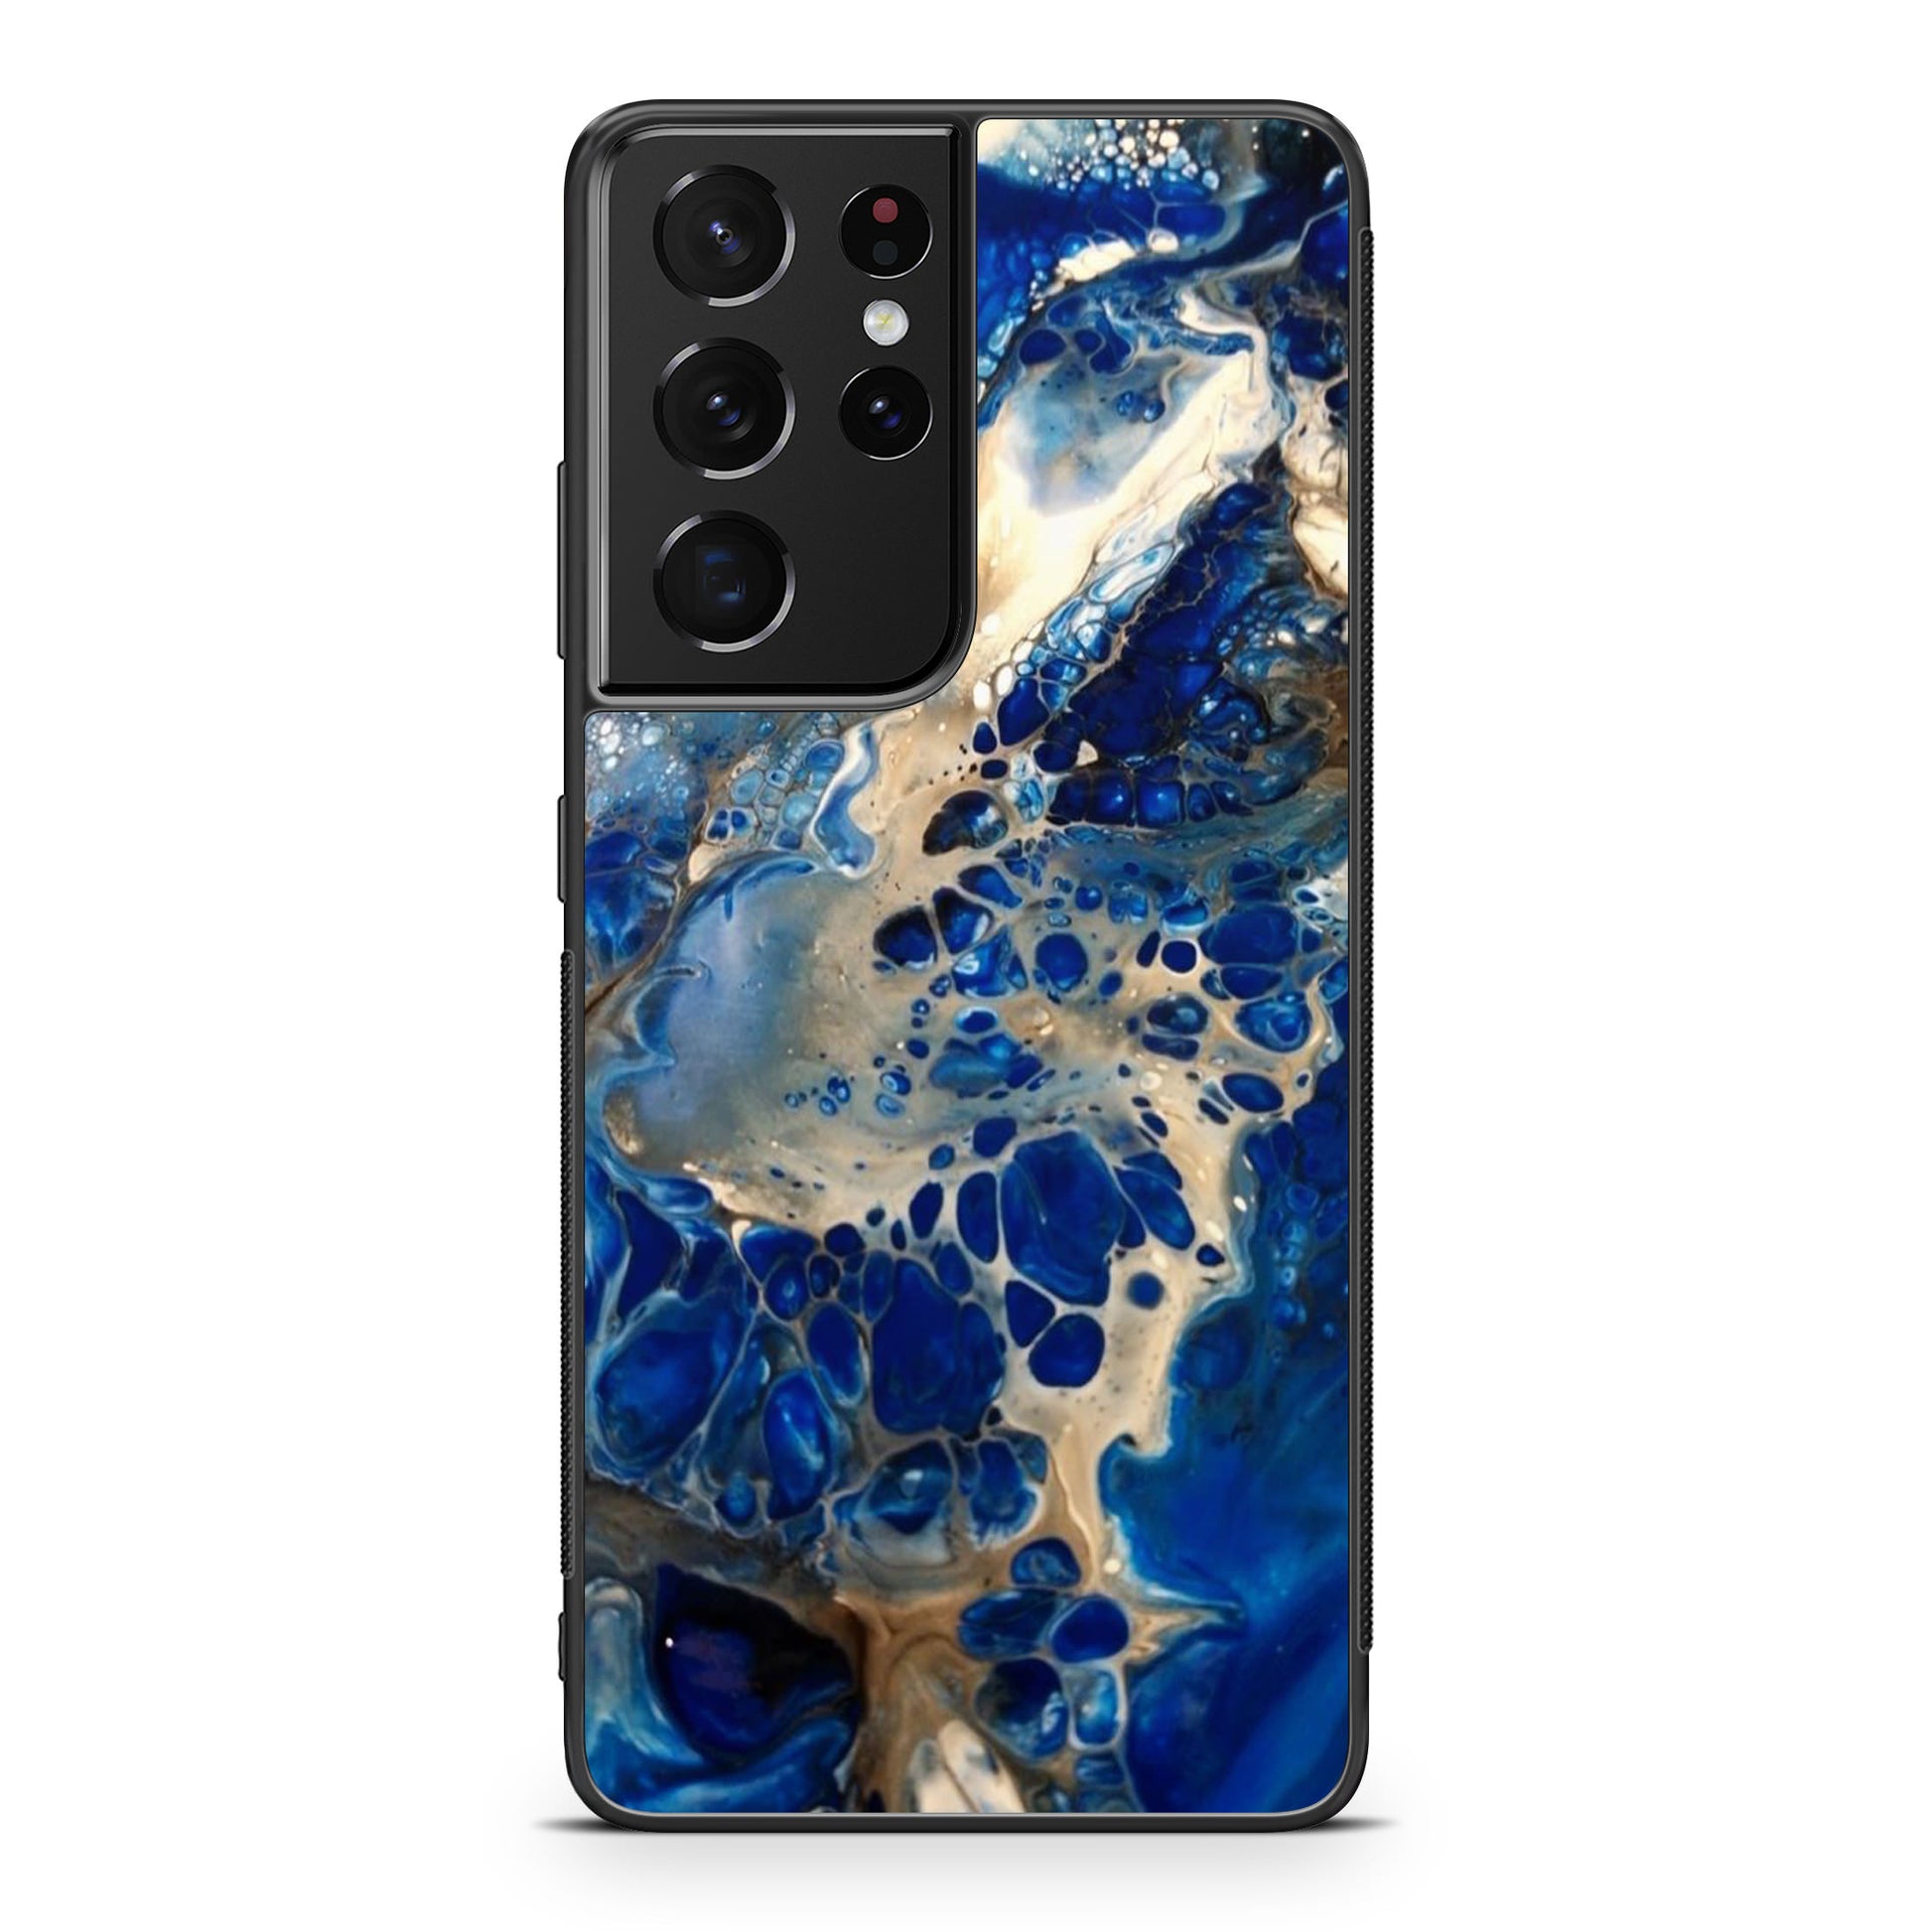 Abstract Golden Blue Paint Art Galaxy S21 Ultra Case